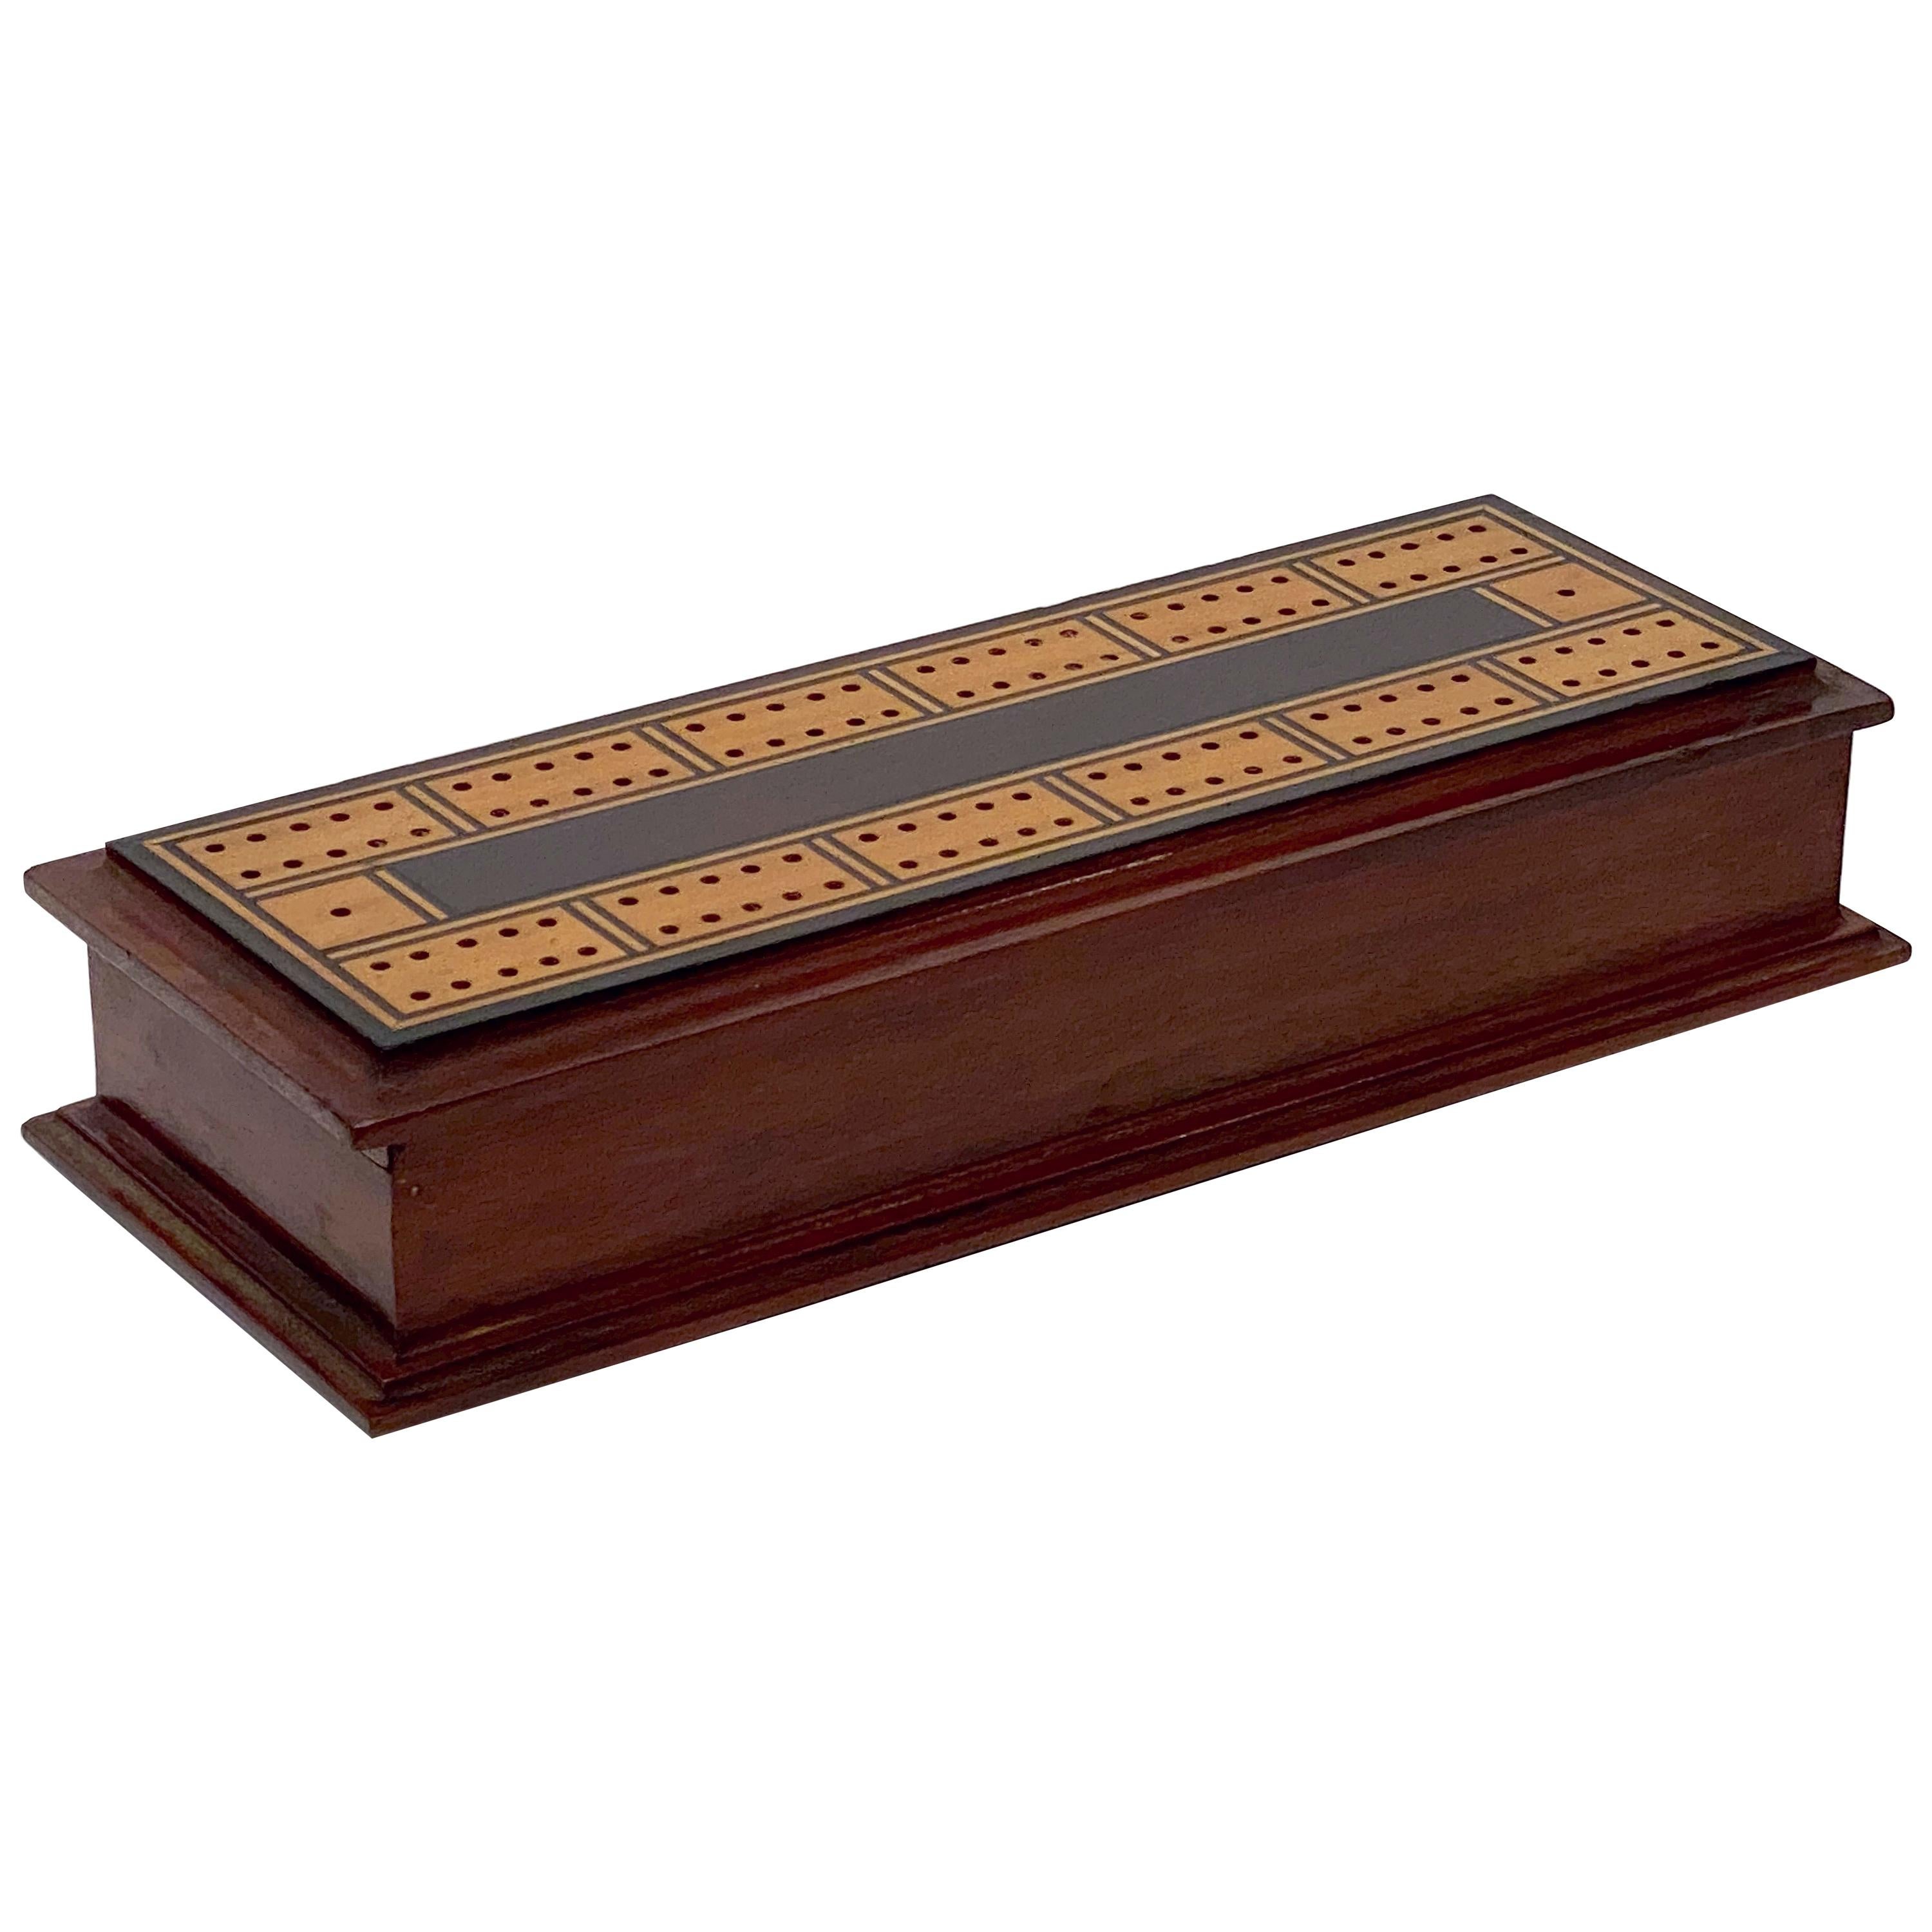 English Cribbage Board or Game Box of Inlaid Mahogany